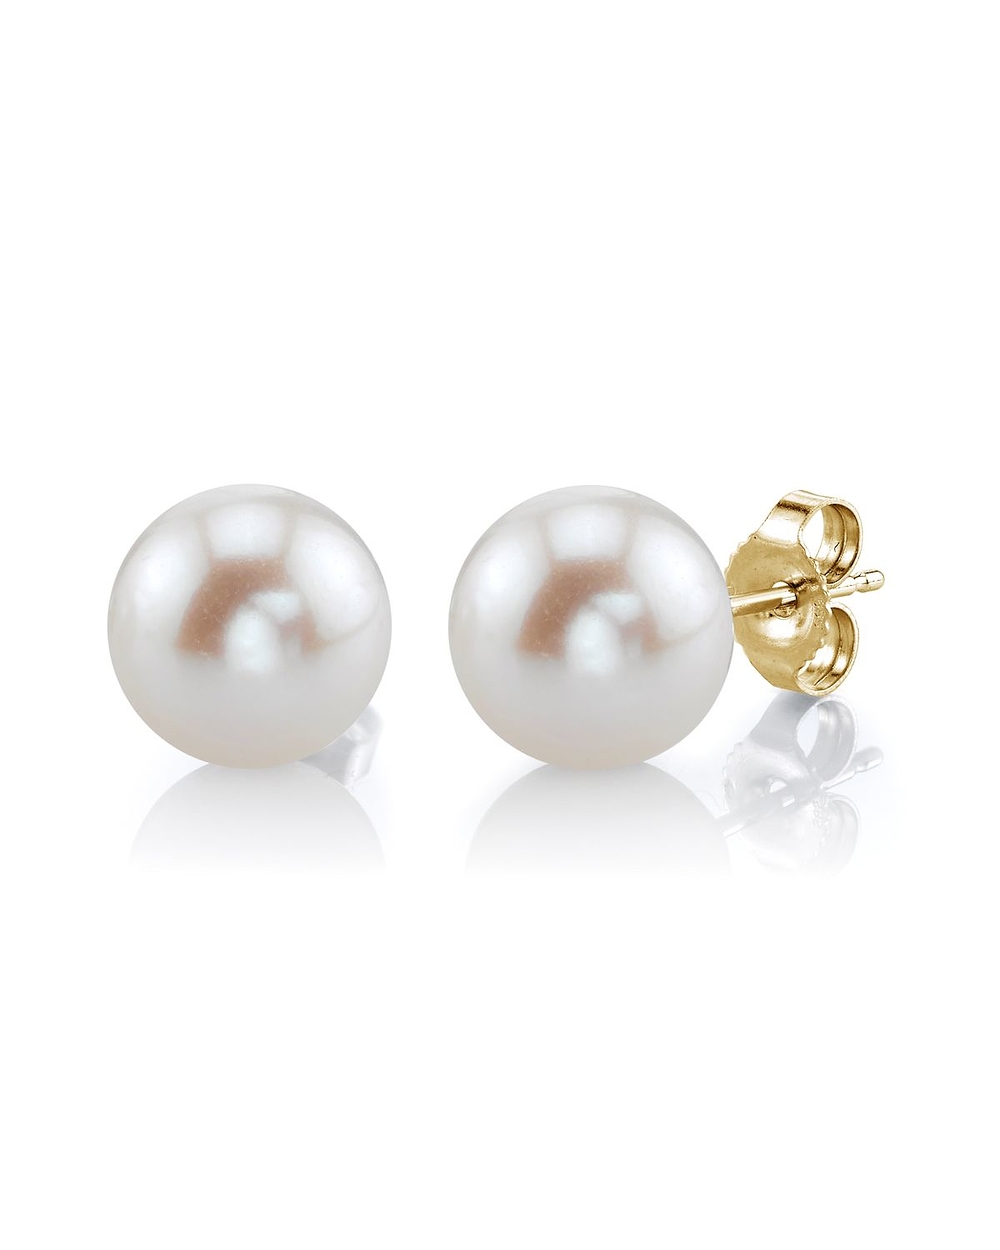 7mm white freshwater pearl stud earrings ZNJKXRM